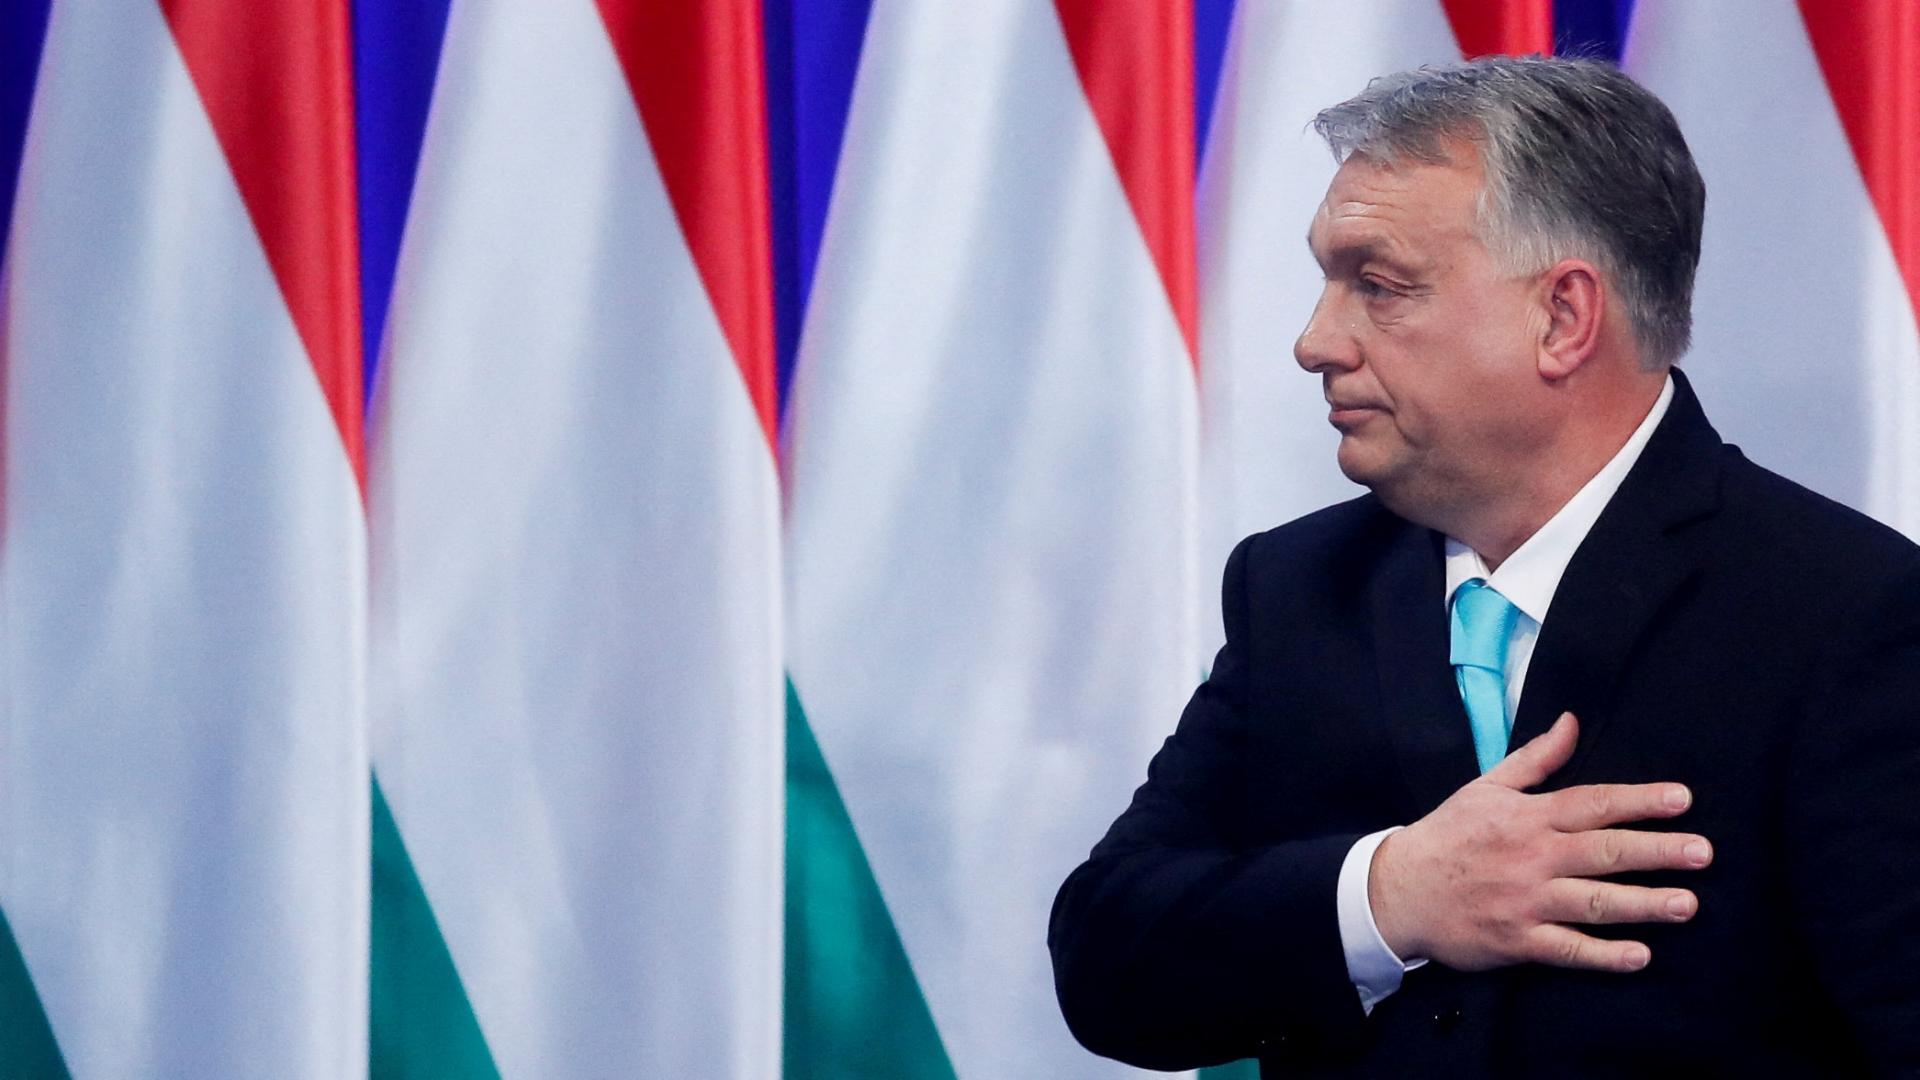 Odstraňovanie zábran pri úrade vlády je zúfalý akt opozície, tvrdí Maďarská vláda